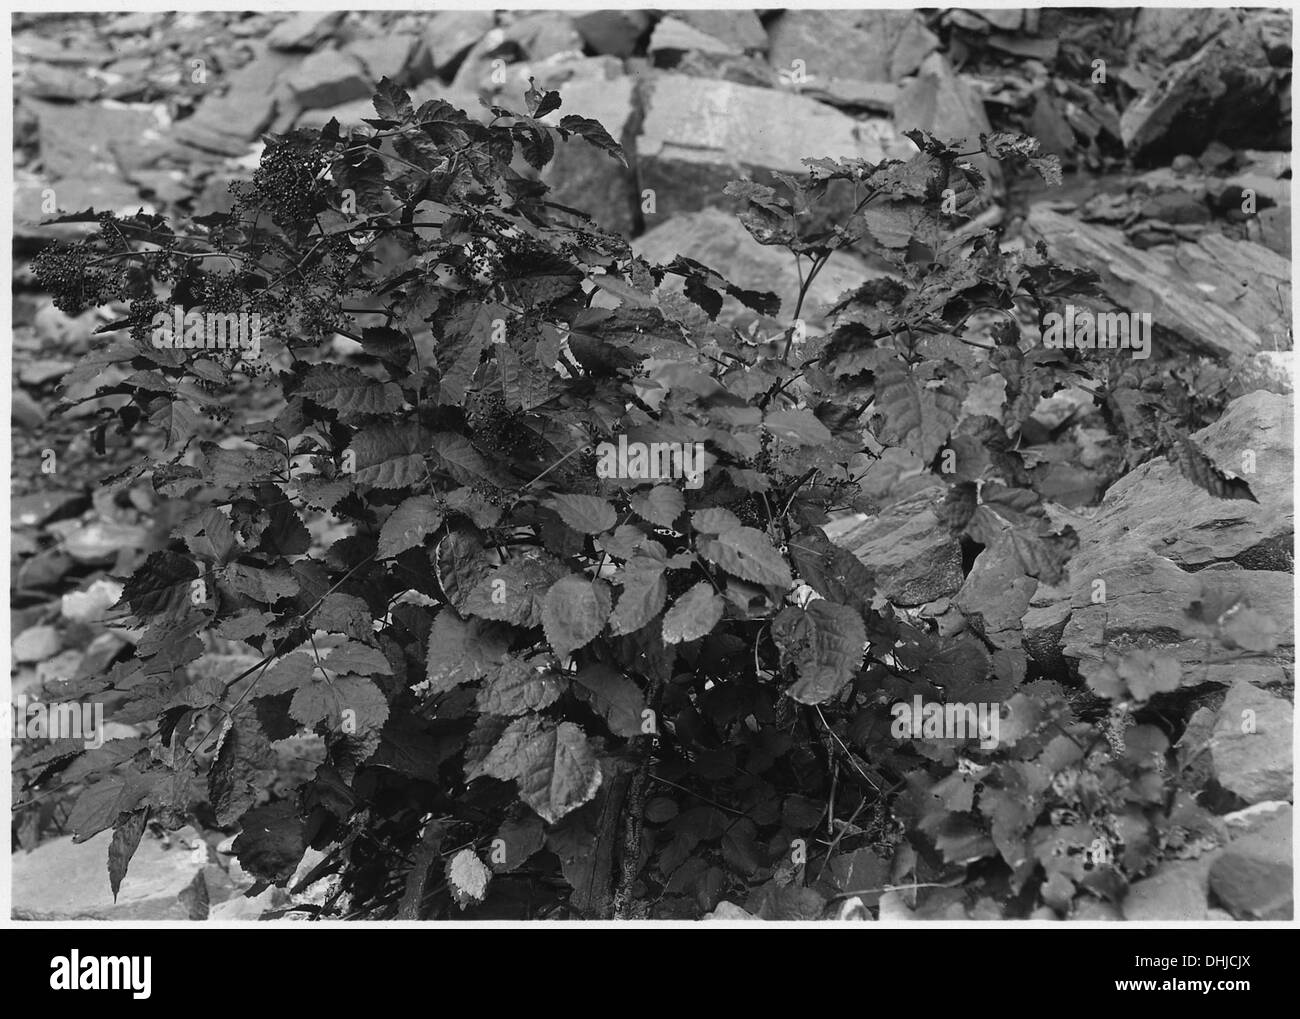 Aralia bicrenata. A rare plant, found in Grotto. 520505 Stock Photo